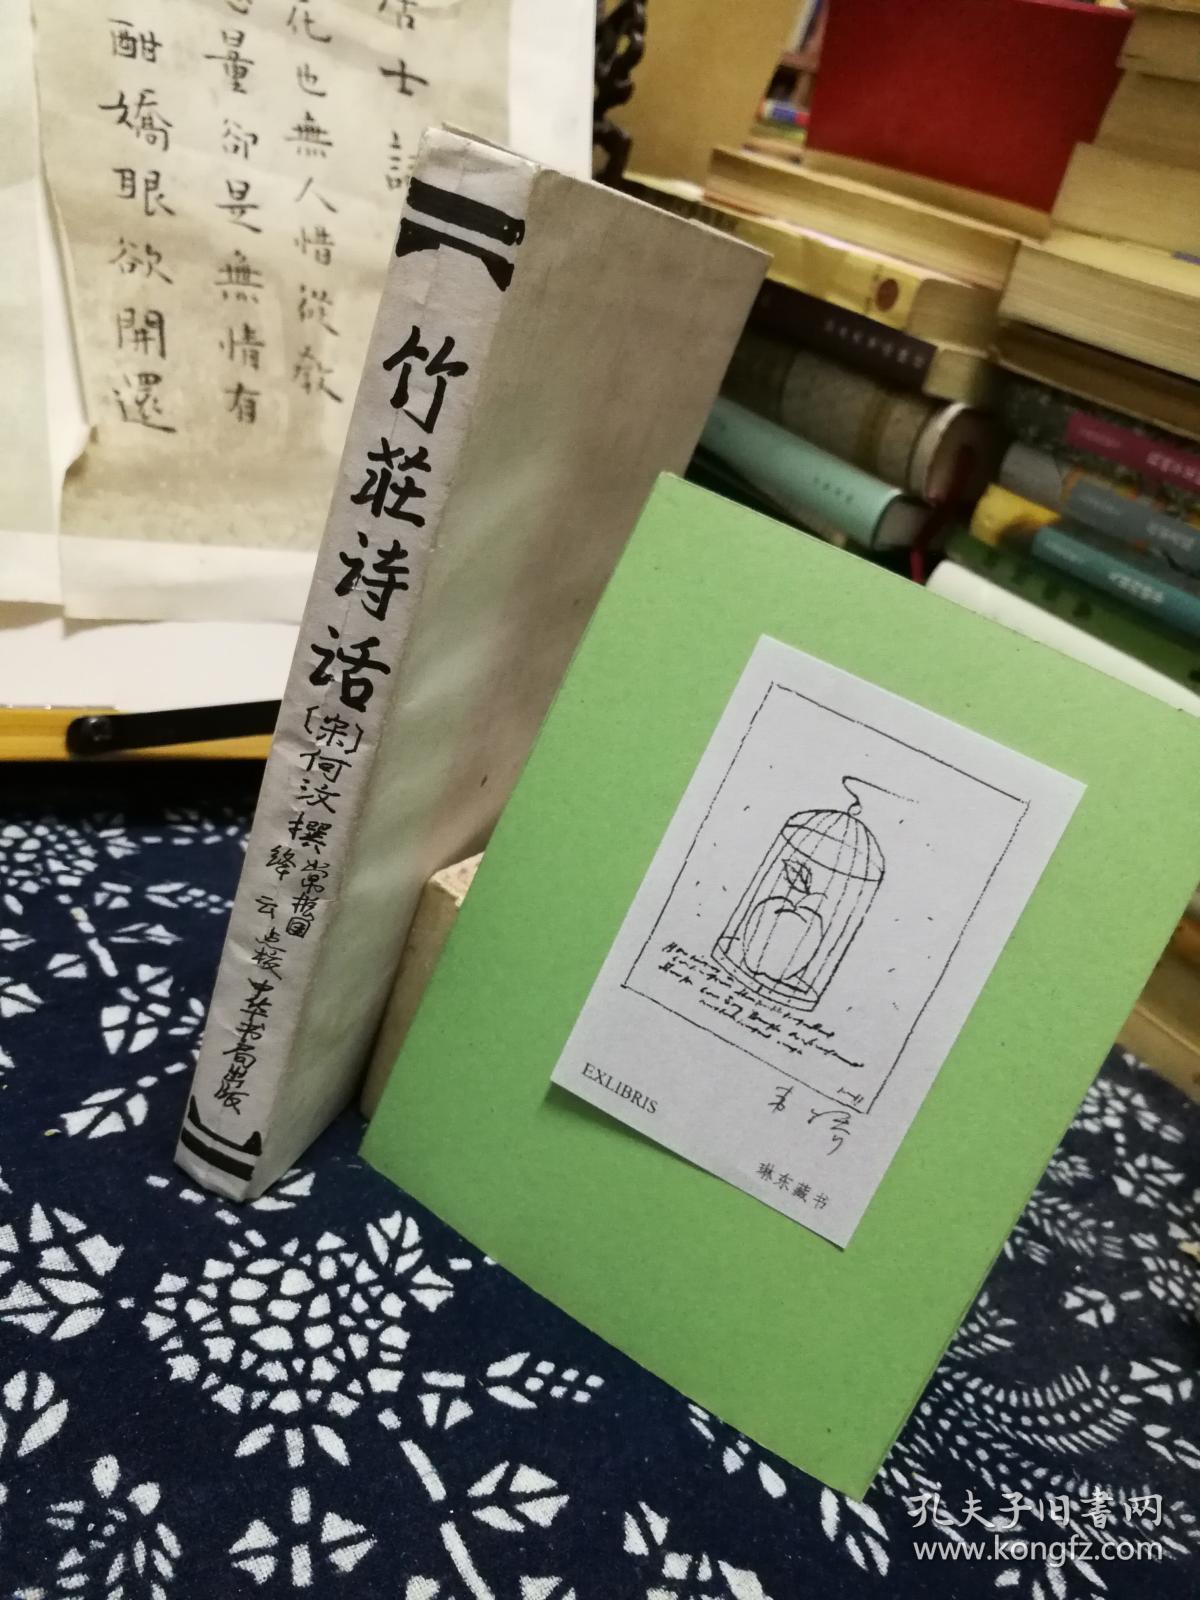 竹莊诗话 84年一版一印  品纸如图  书票一枚 便宜18元